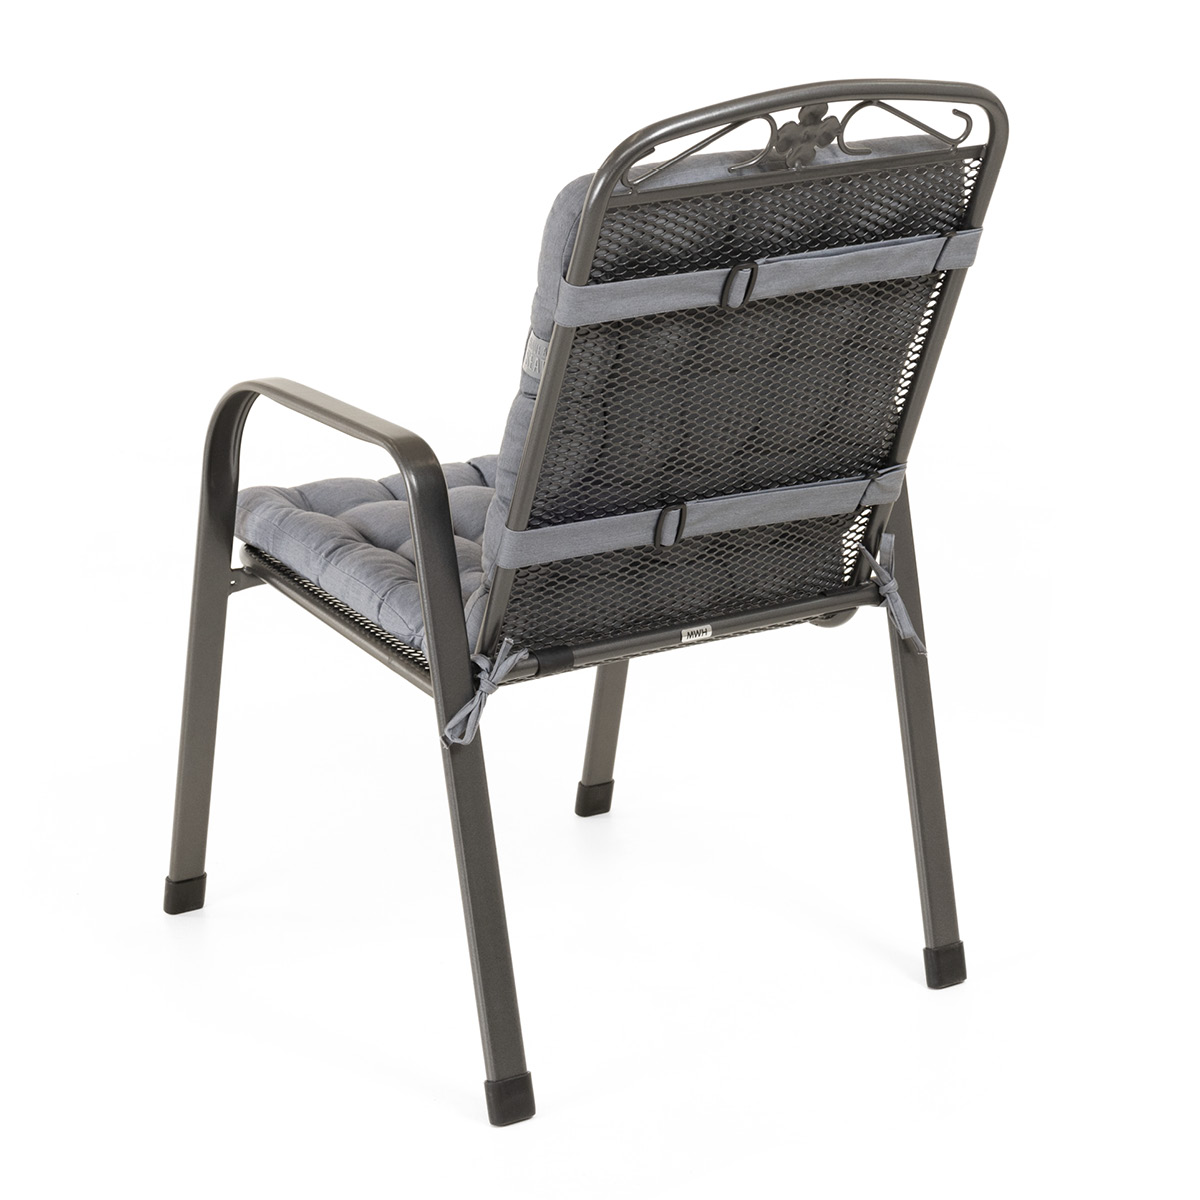 Sitzkissen mit Rückenlehne hellgrau | dicke Polsterung mit Schleifen und Bänder zur Befestigung an Gartenstuhl / Stapelstuhl | HAVE A SEAT Living 